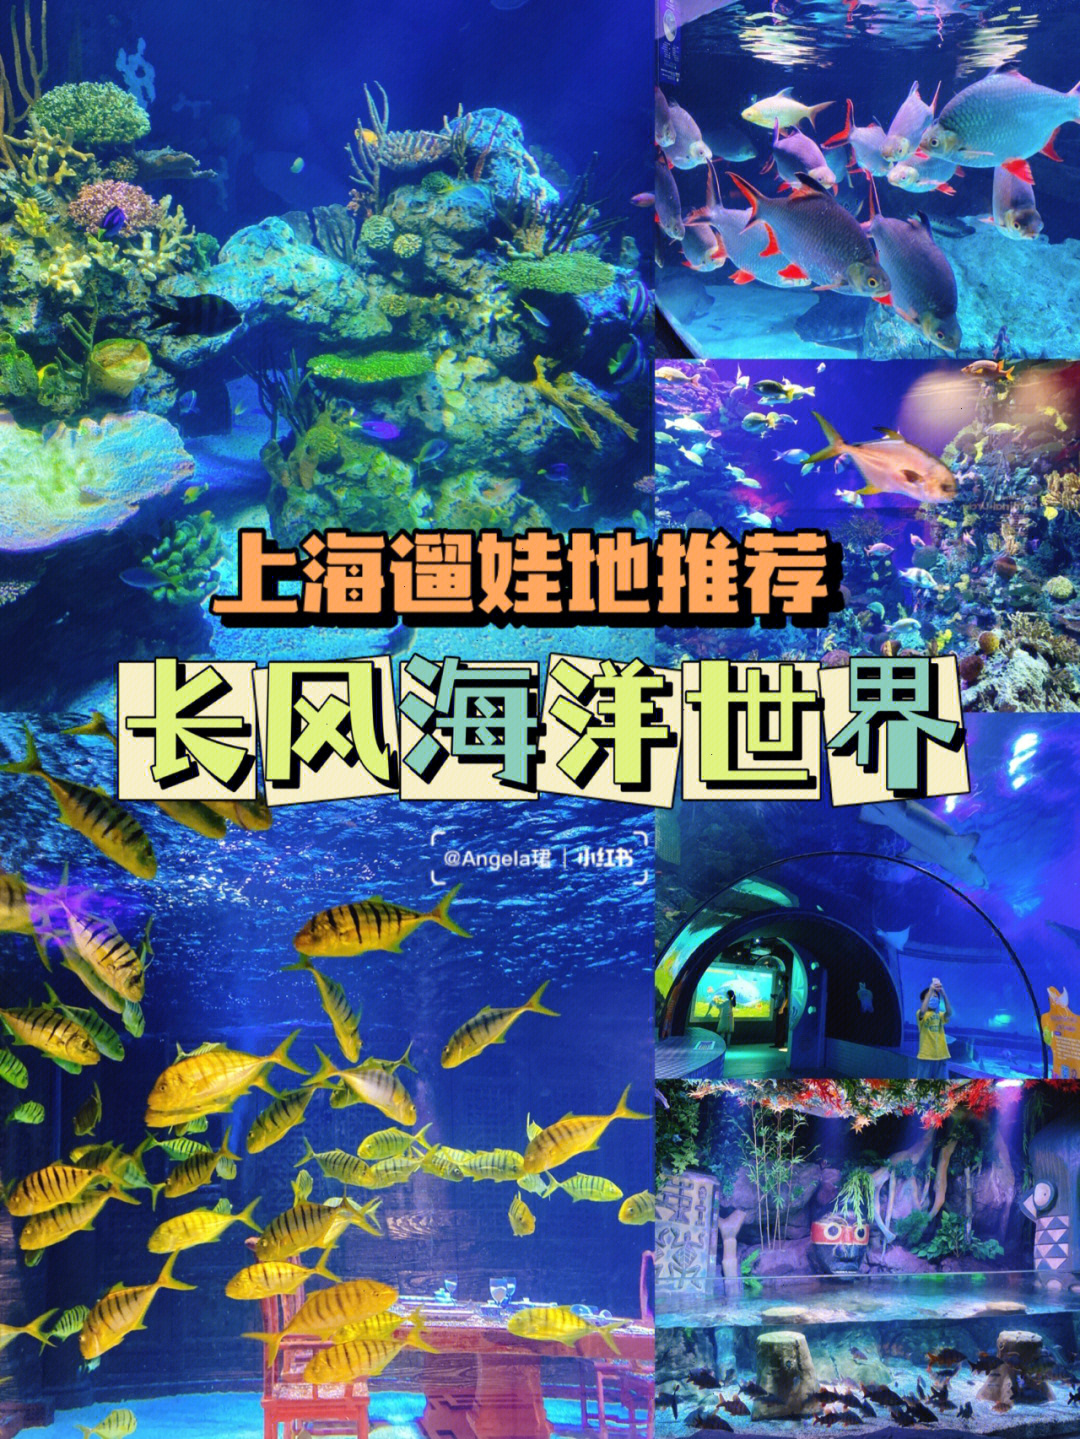 上海海洋馆_同济大学海洋探索馆地址_儿童互动海洋绘画馆